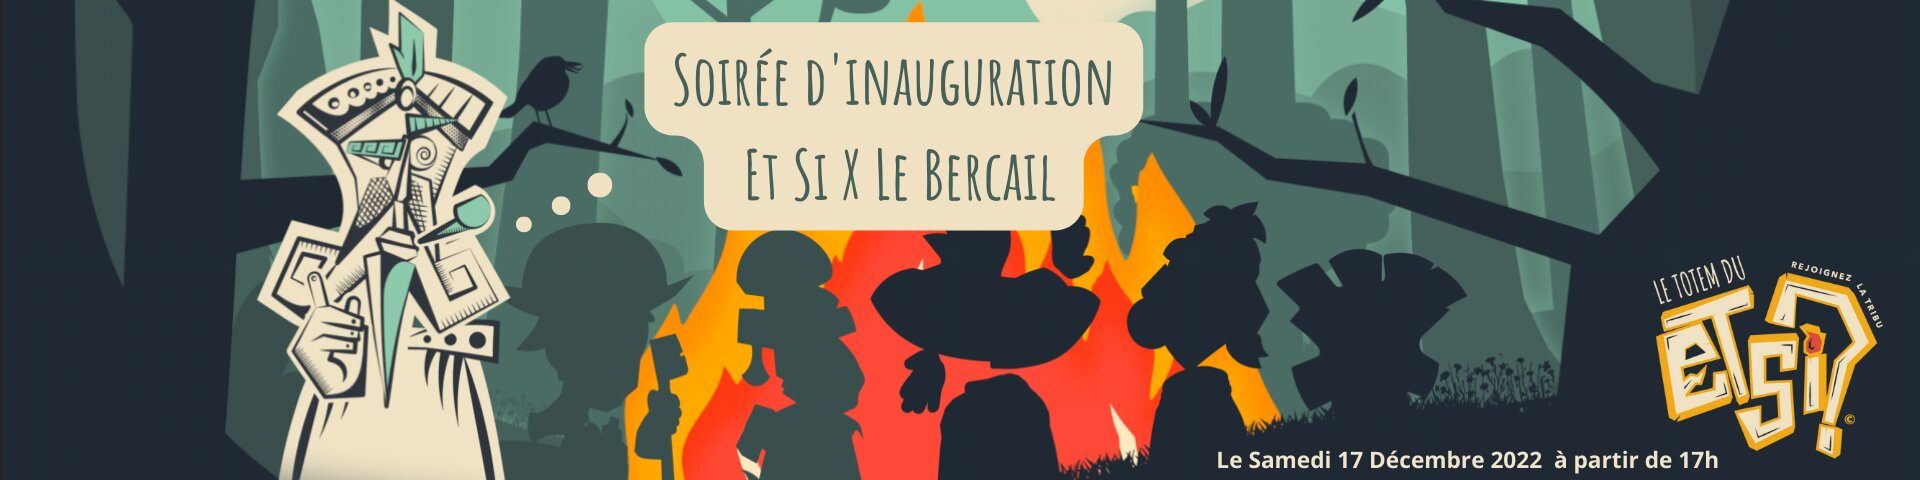 Soirée d'inauguration Et Si X Le Bercail, le samedi 17 décembre 2022 à partir de 17h.